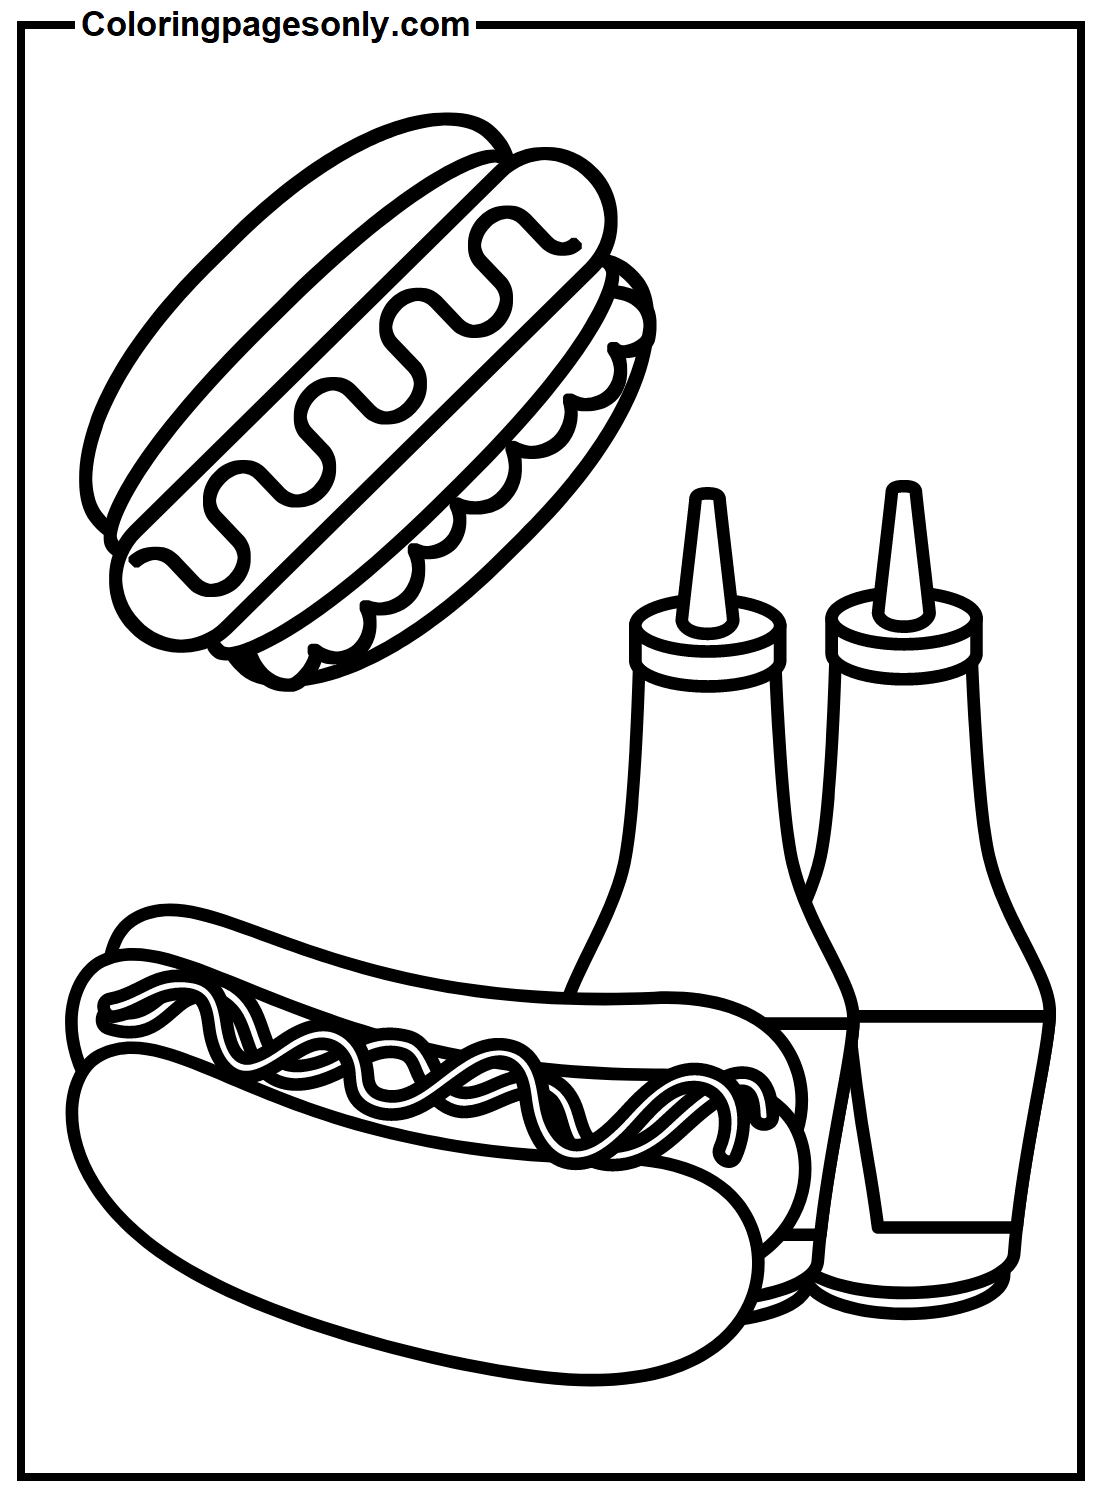 Hot Dogs mit Ketchup-Flasche von Hot Dog